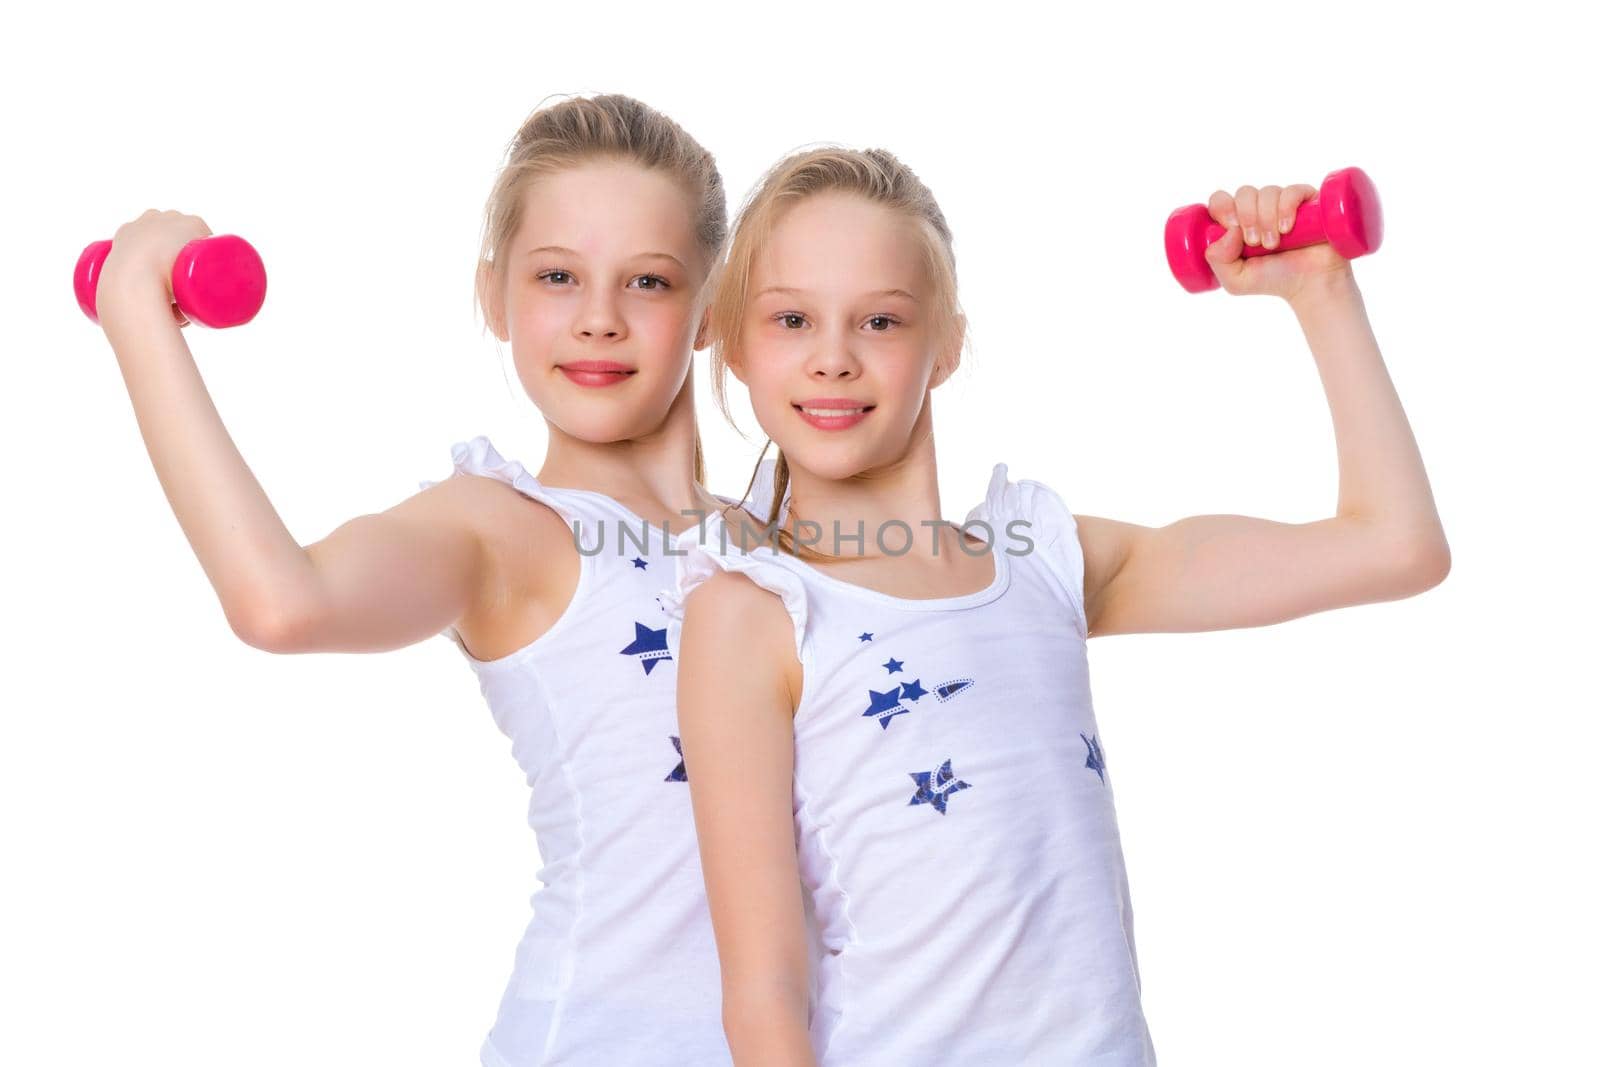 Girls gymnasts show their muscles. by kolesnikov_studio